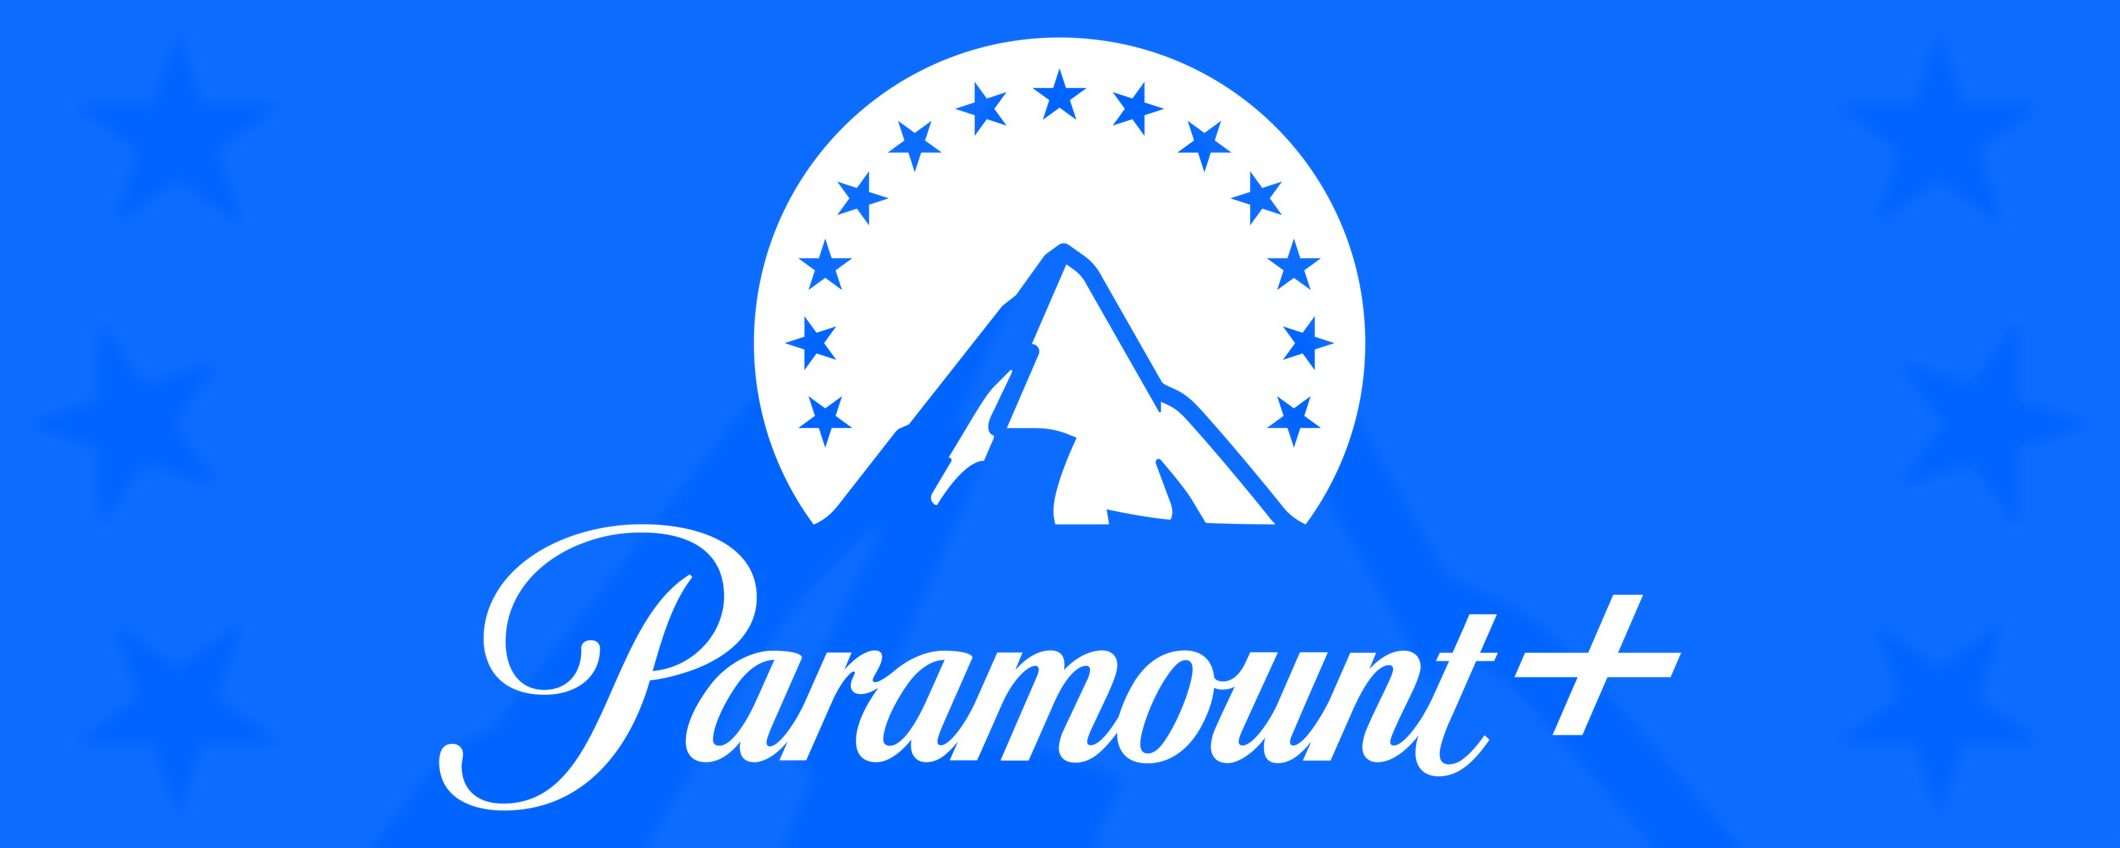 Paramount+ in Italia: la data di lancio (e CIRCEO)